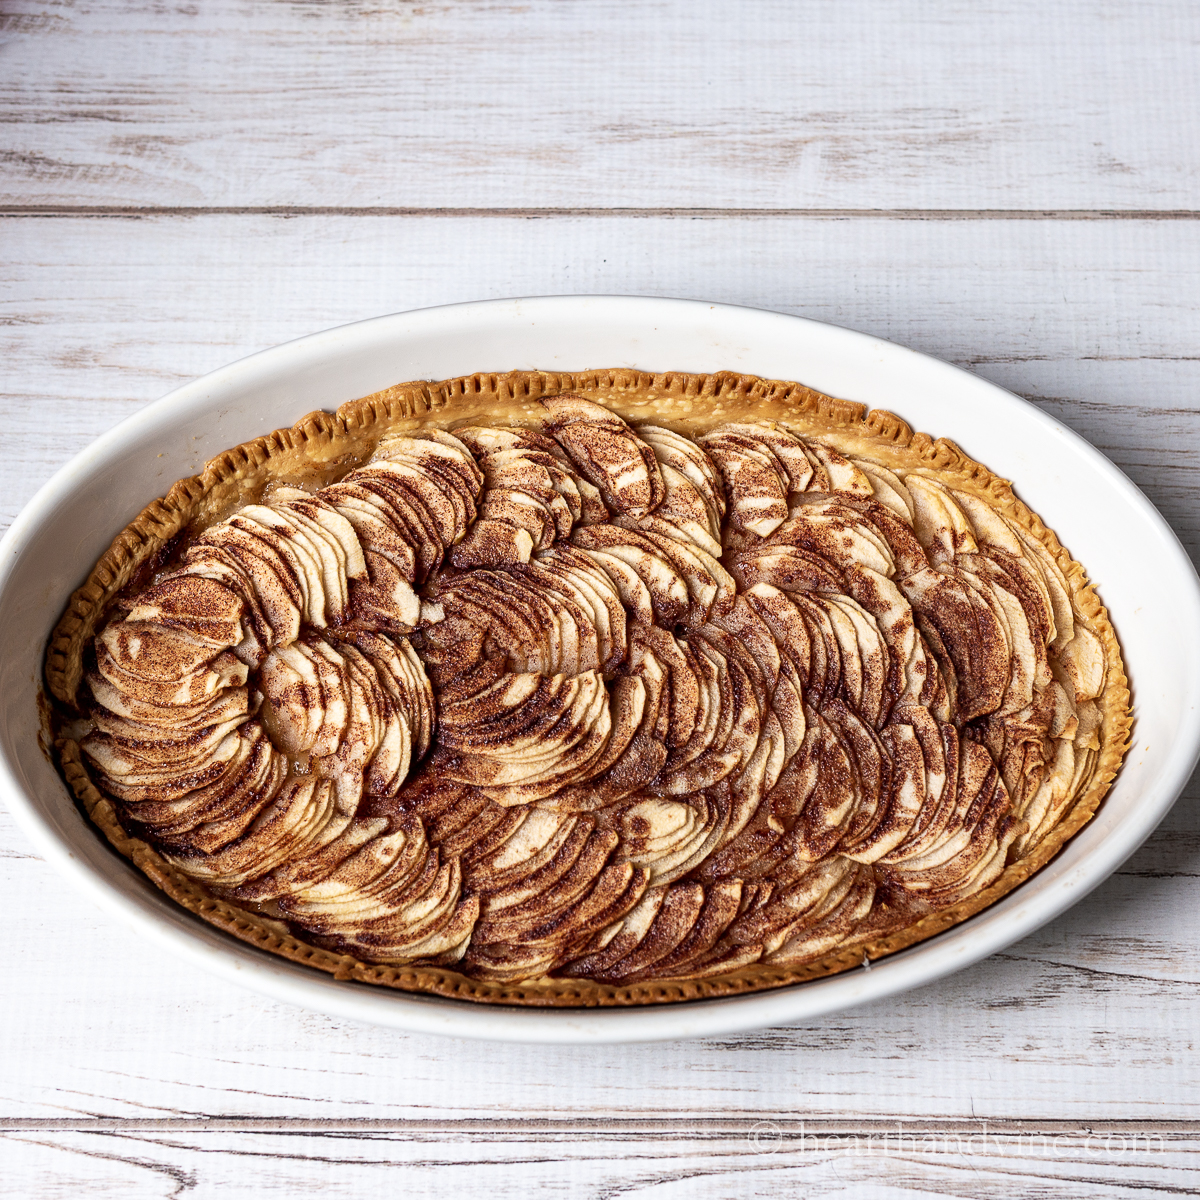 Apple tart in an oval baking dish